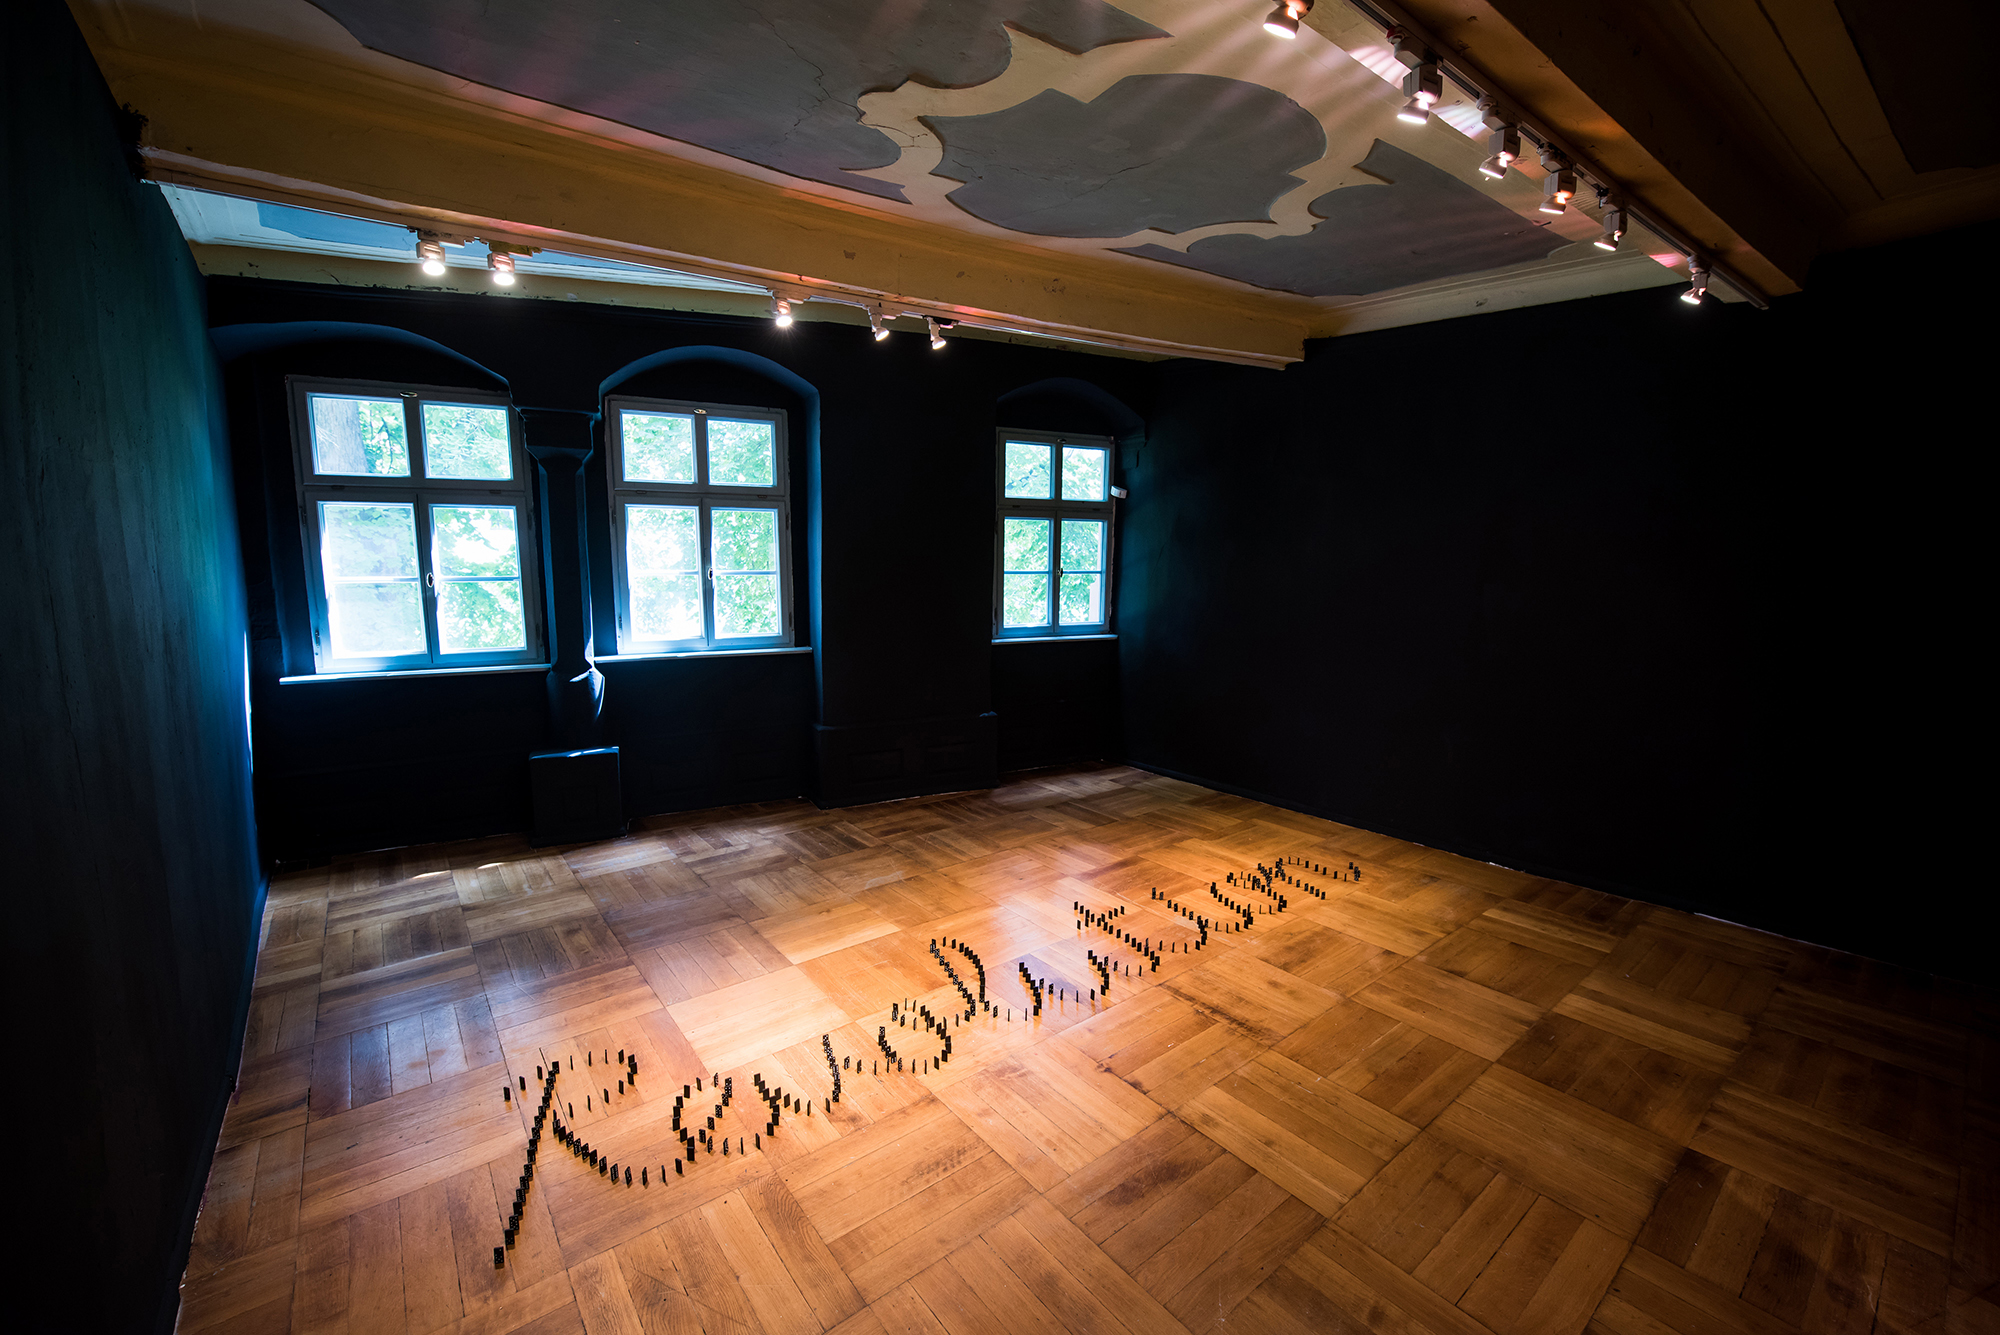 Revolution, 2017. Installation, domino. Installation view, ACC Galerie Weimar, Weimar